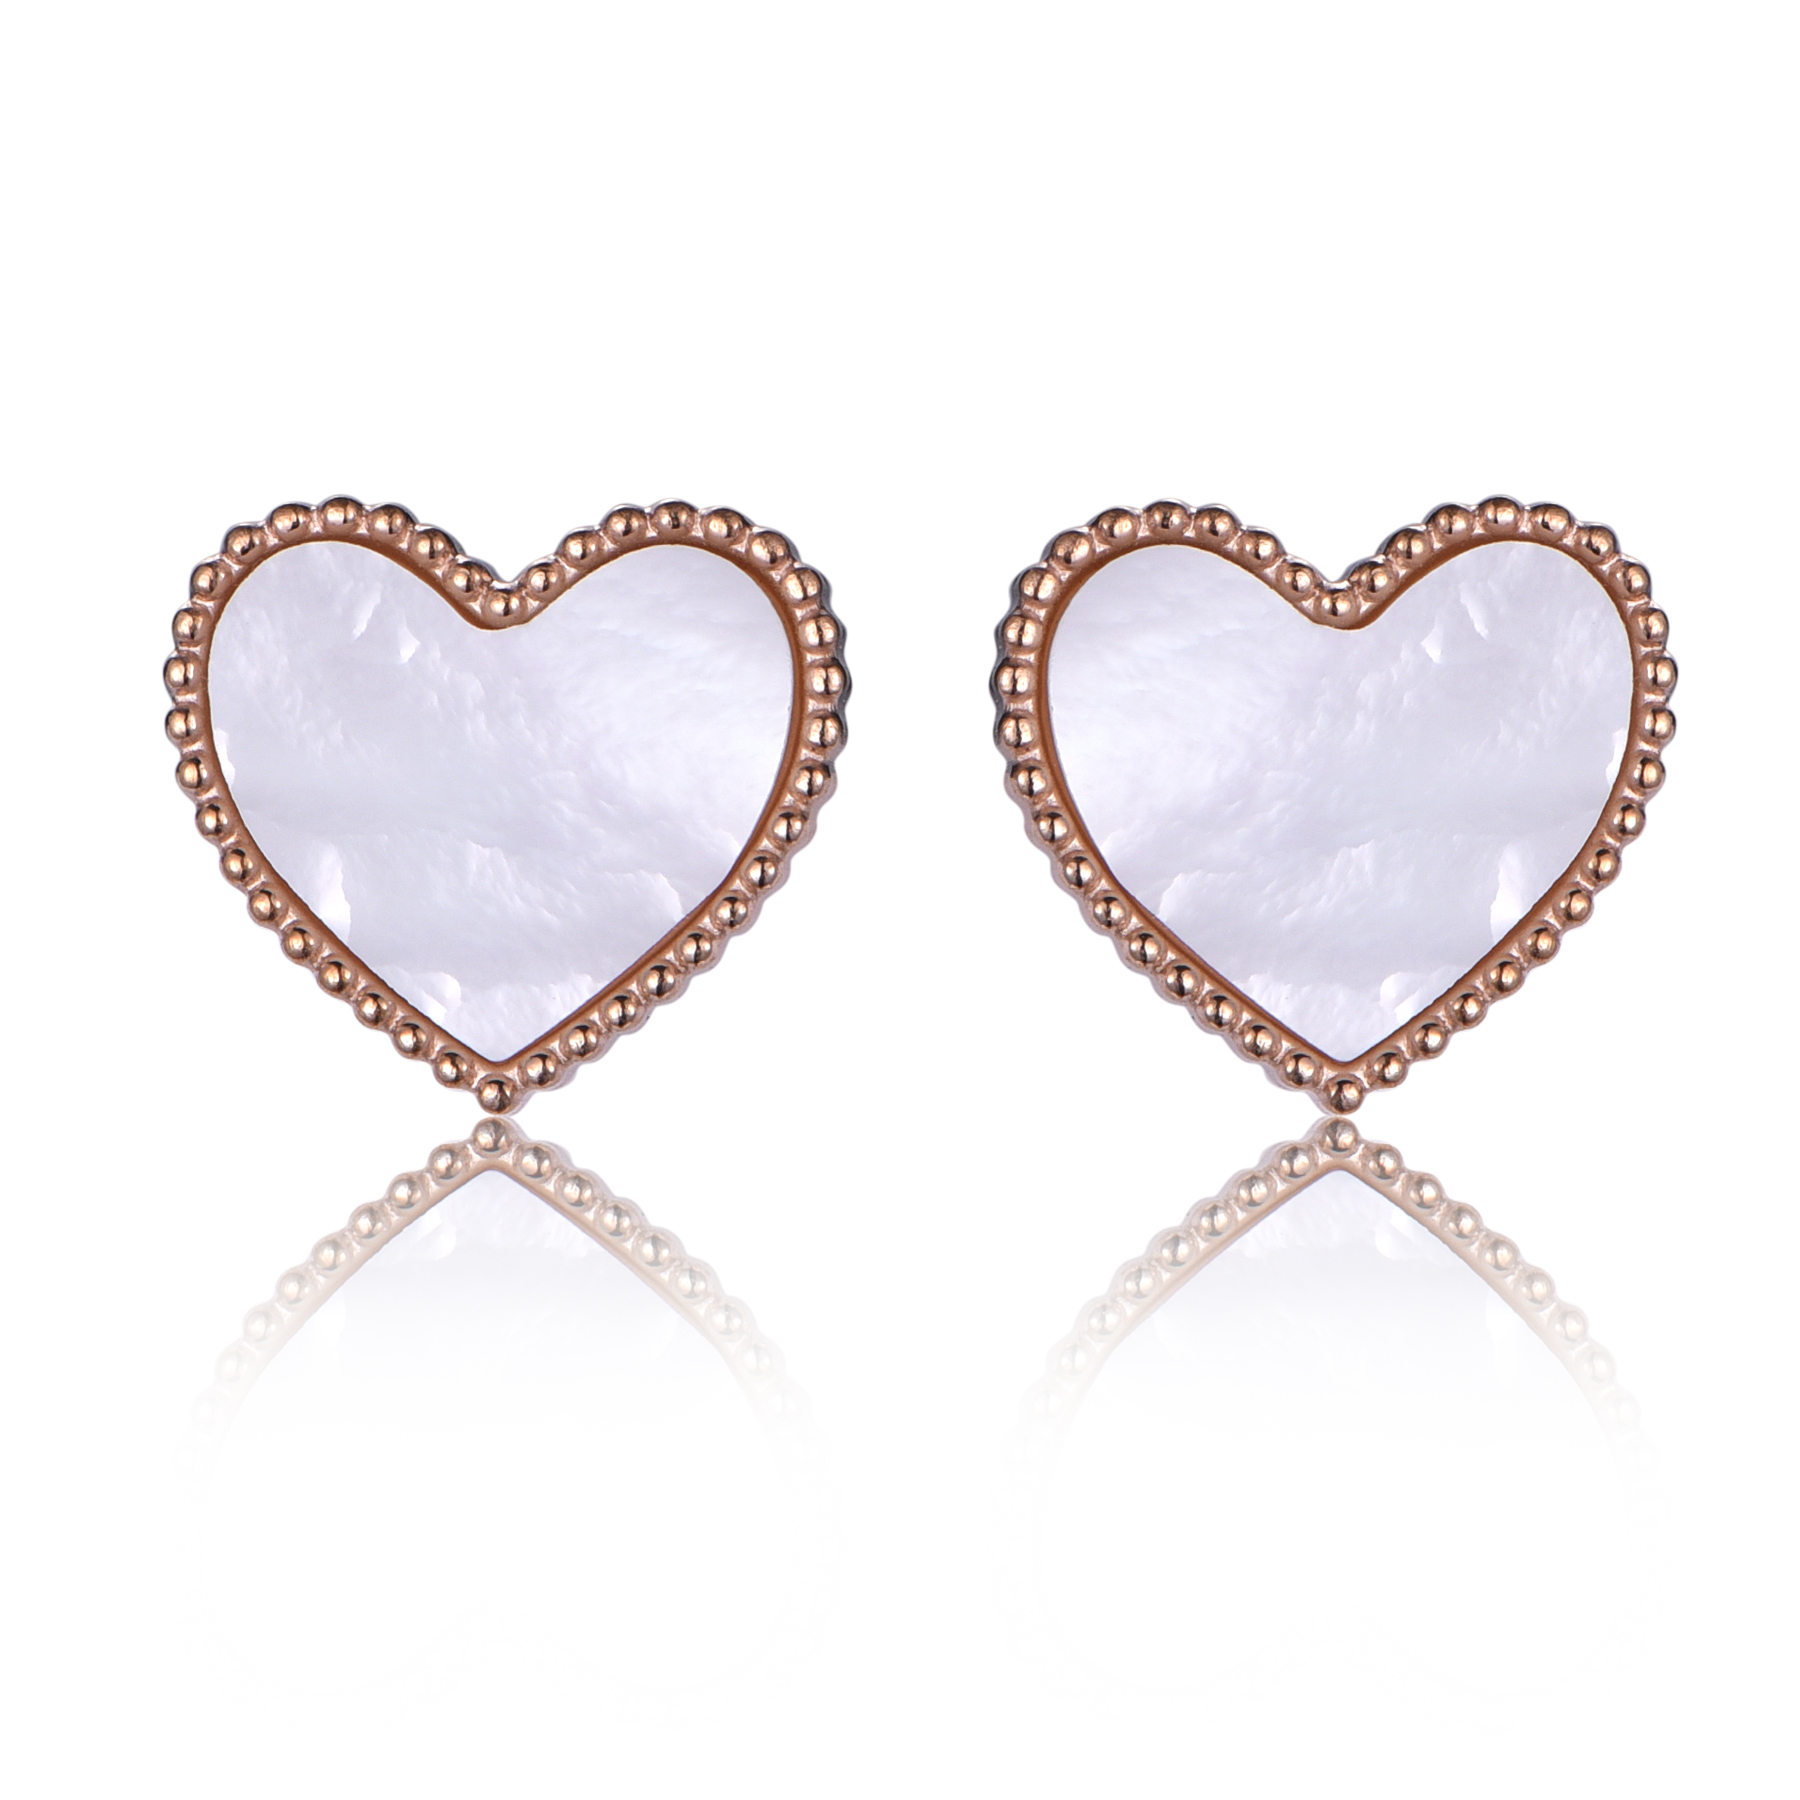 Stainless Steel Shell Heart Stud Earrings Gift for Her ER7-14